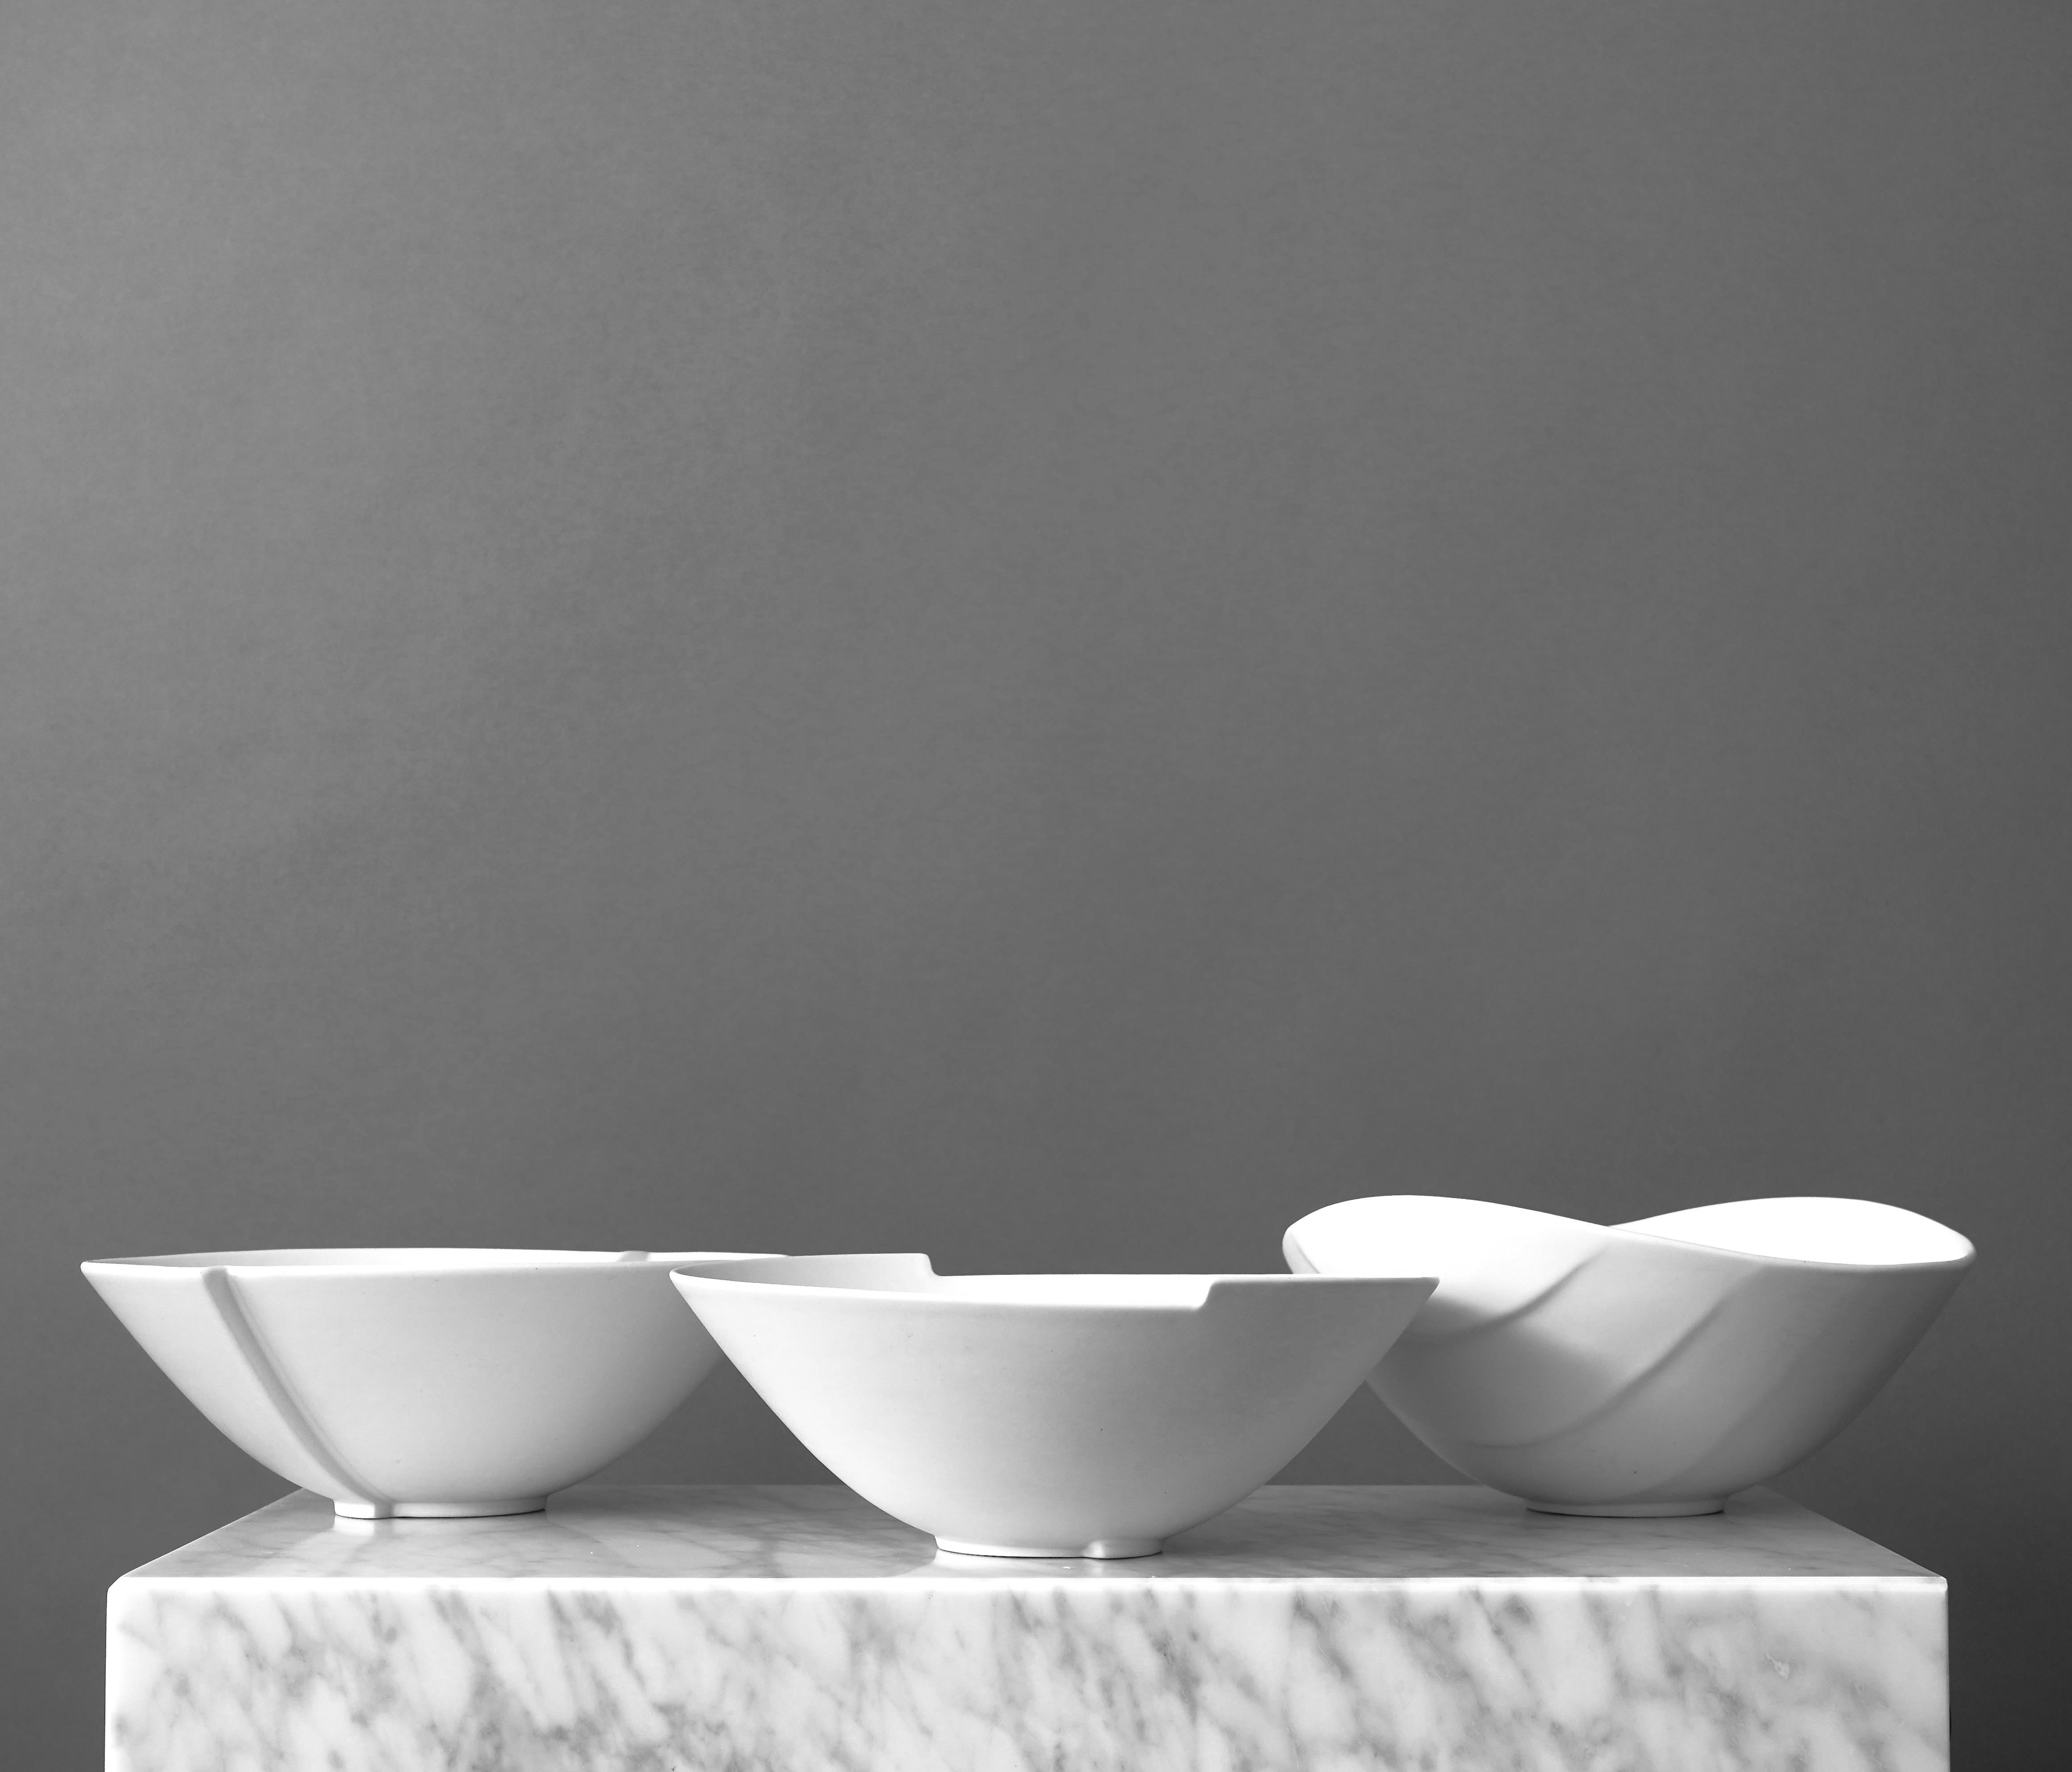 Trois superbes bols en grès 'Surrea' avec glaçure 'Carrara'. 
Fabriqué par Wilhelm Kåge au Studio Gustavsberg en Suède, dans les années 1950. 

Excellent état. 
Estampillé 